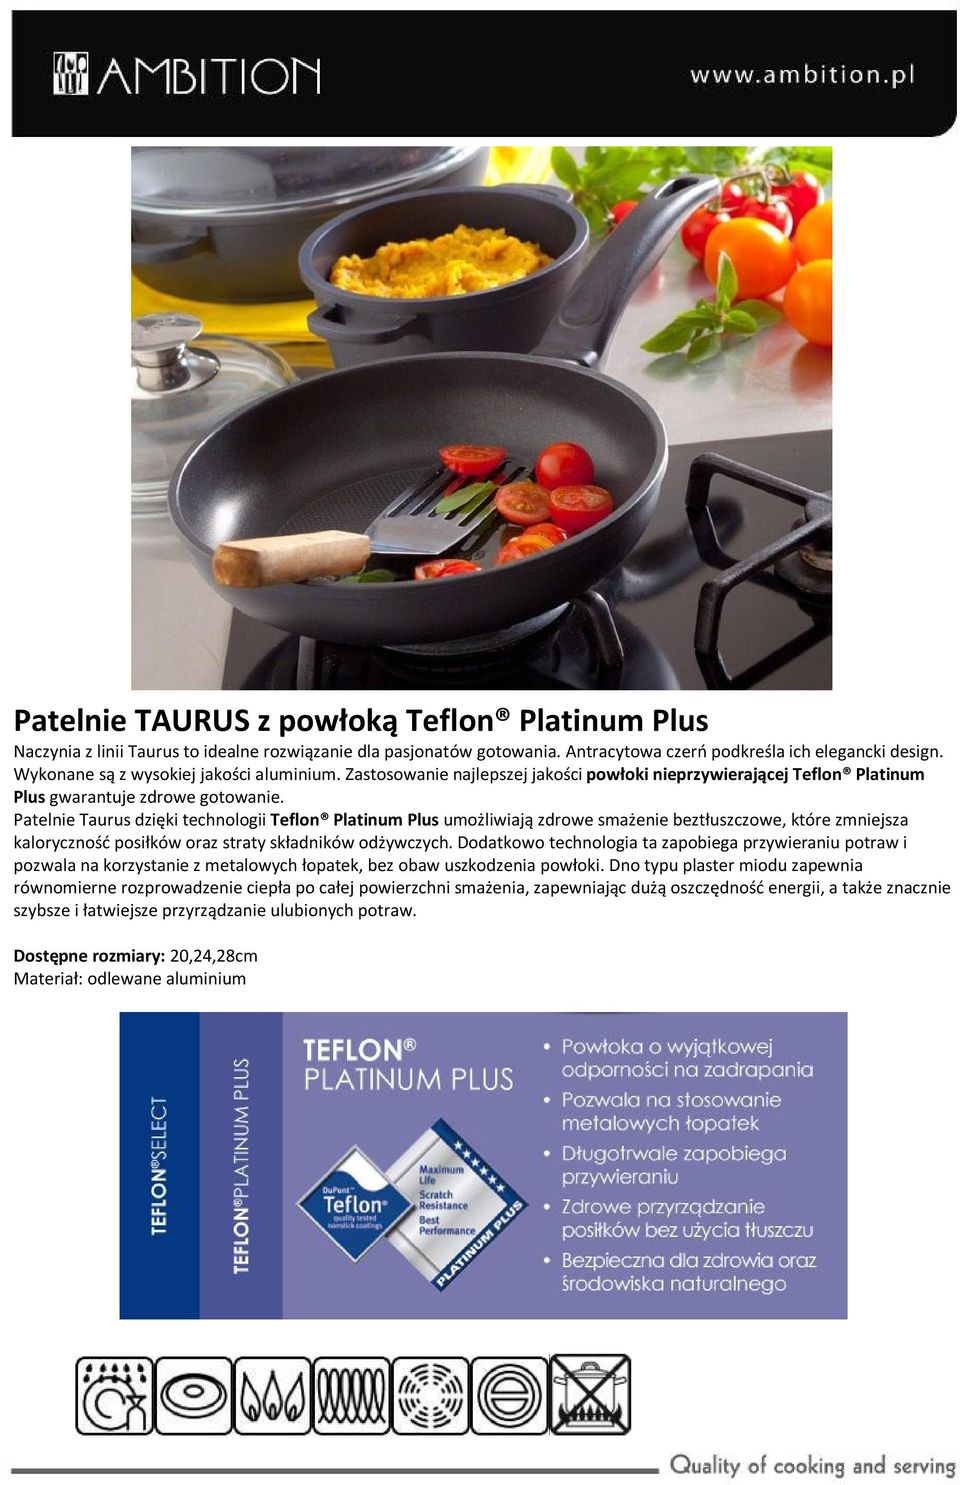 Patelnie Taurus dzięki technologii Teflon Platinum Plus umożliwiają zdrowe smażenie beztłuszczowe, które zmniejsza kaloryczność posiłków oraz straty składników odżywczych.